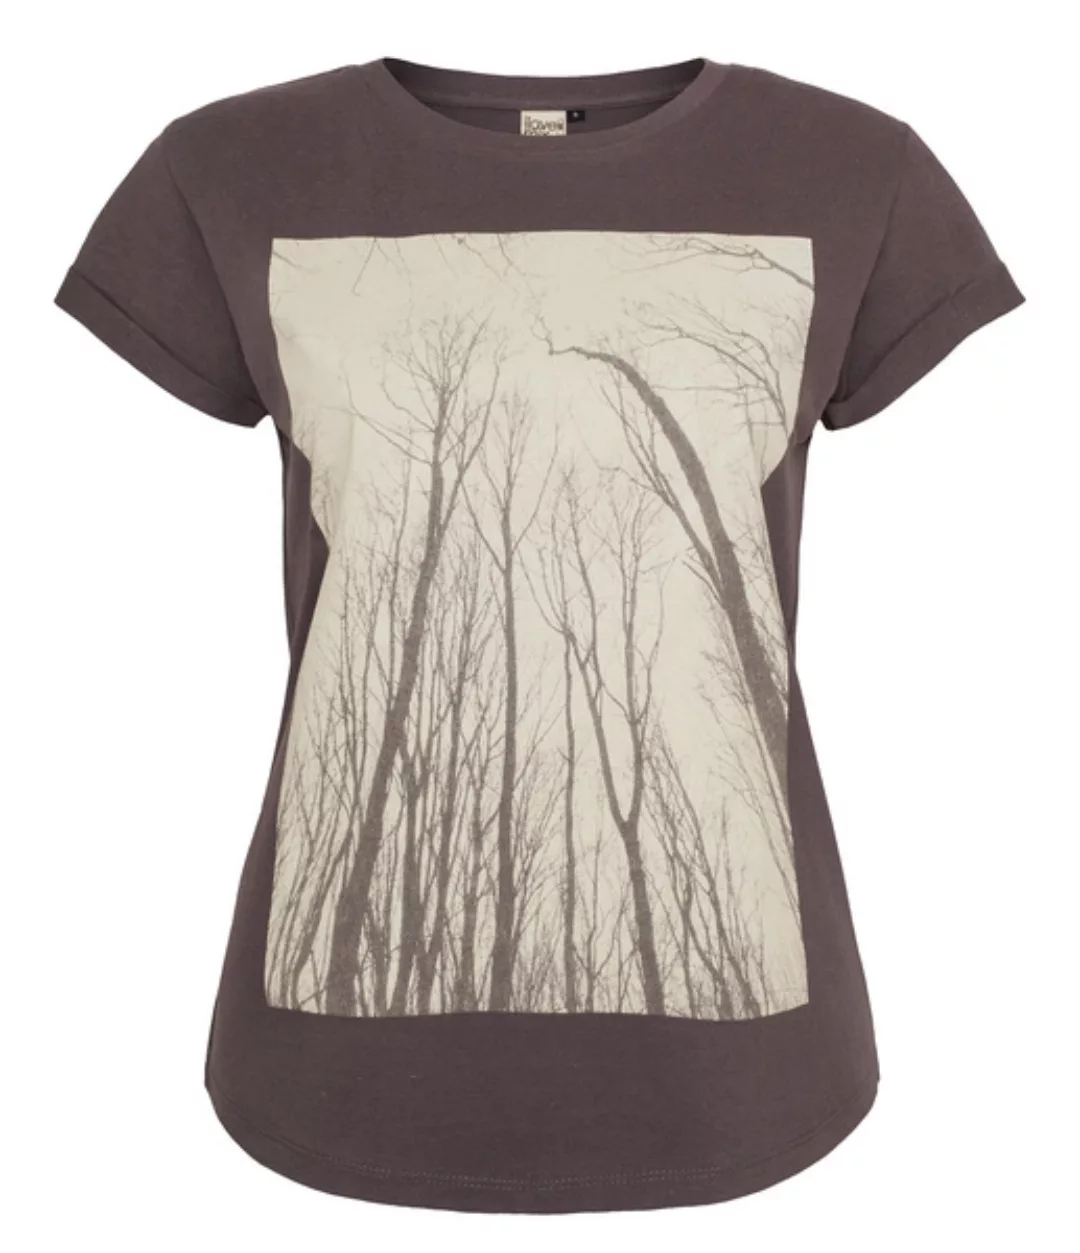 Frauen T-shirt Wald Forest Hergestellt In Kenia - Dunkelgrau / Ilk02 günstig online kaufen